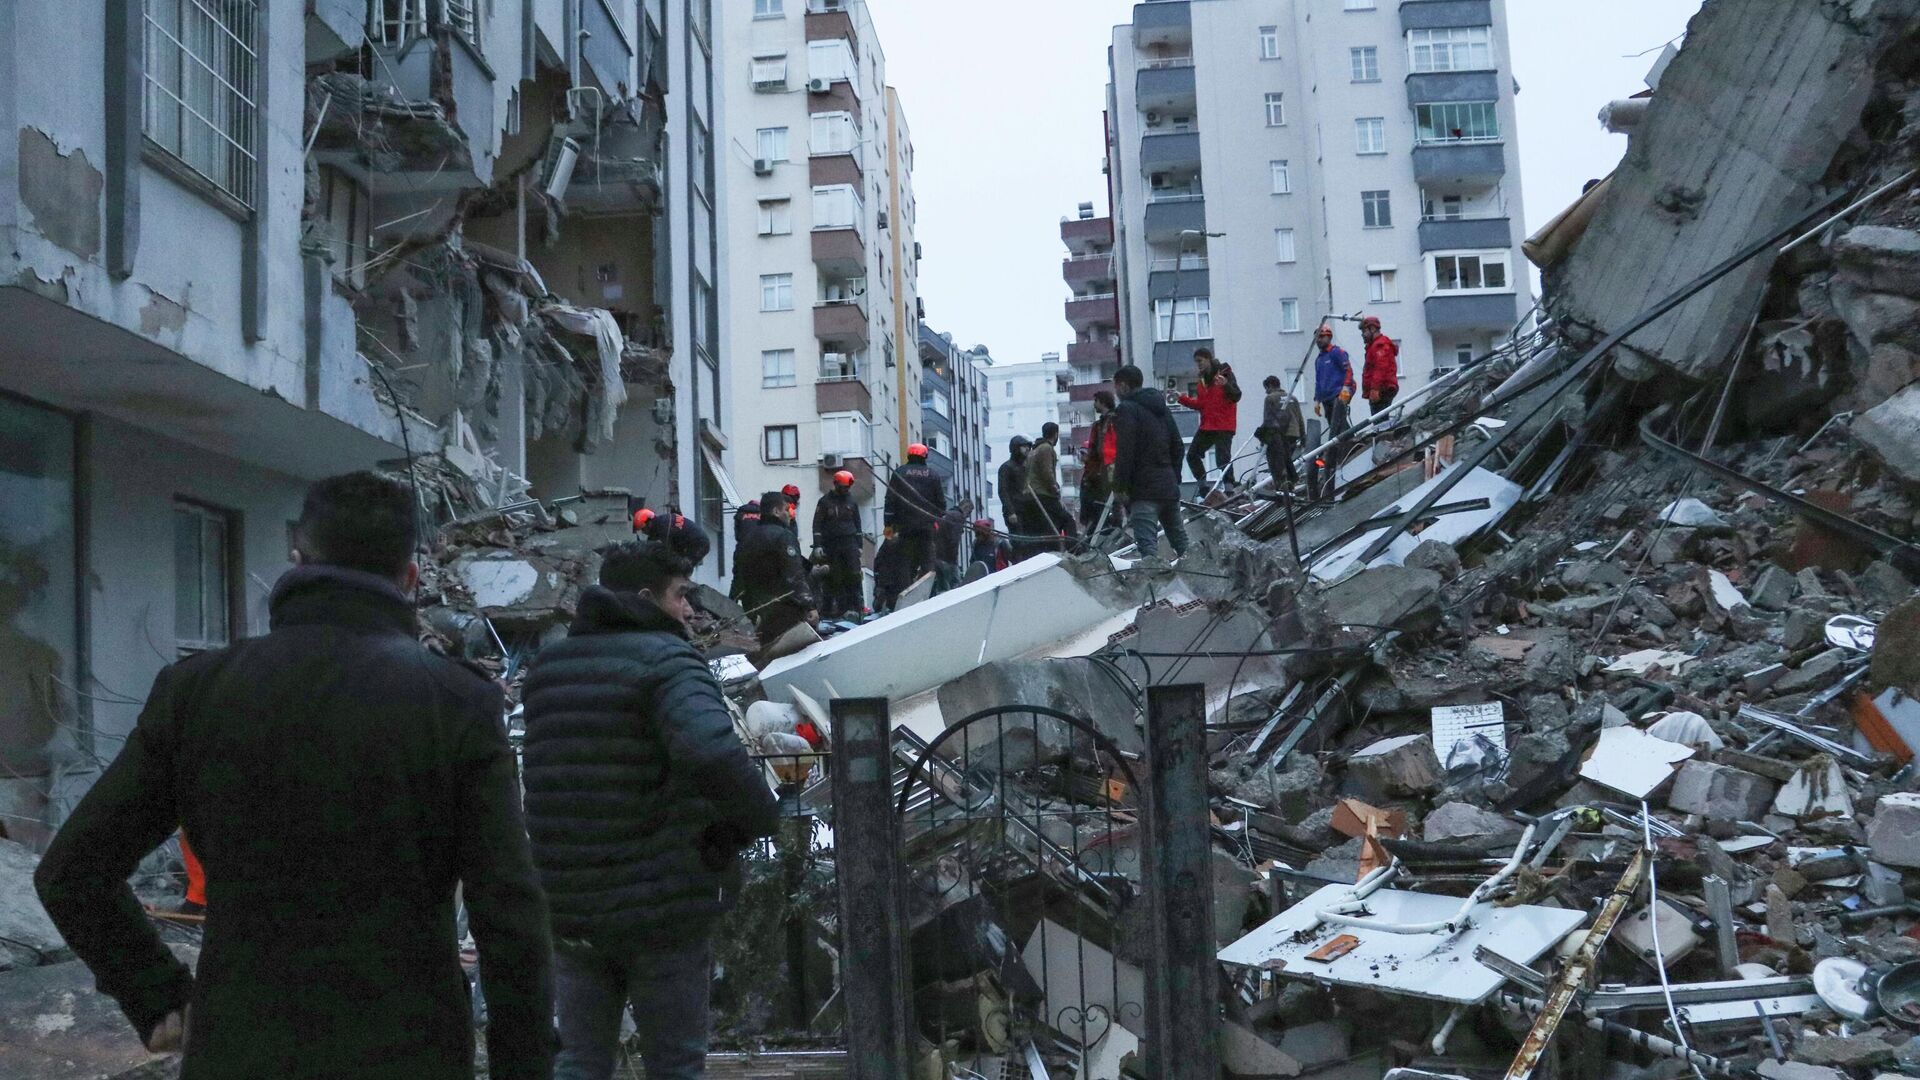 Последствия землетрясения в Адане, Турция. 6 февраля 2023 года - ИноСМИ, 1920, 08.02.2023